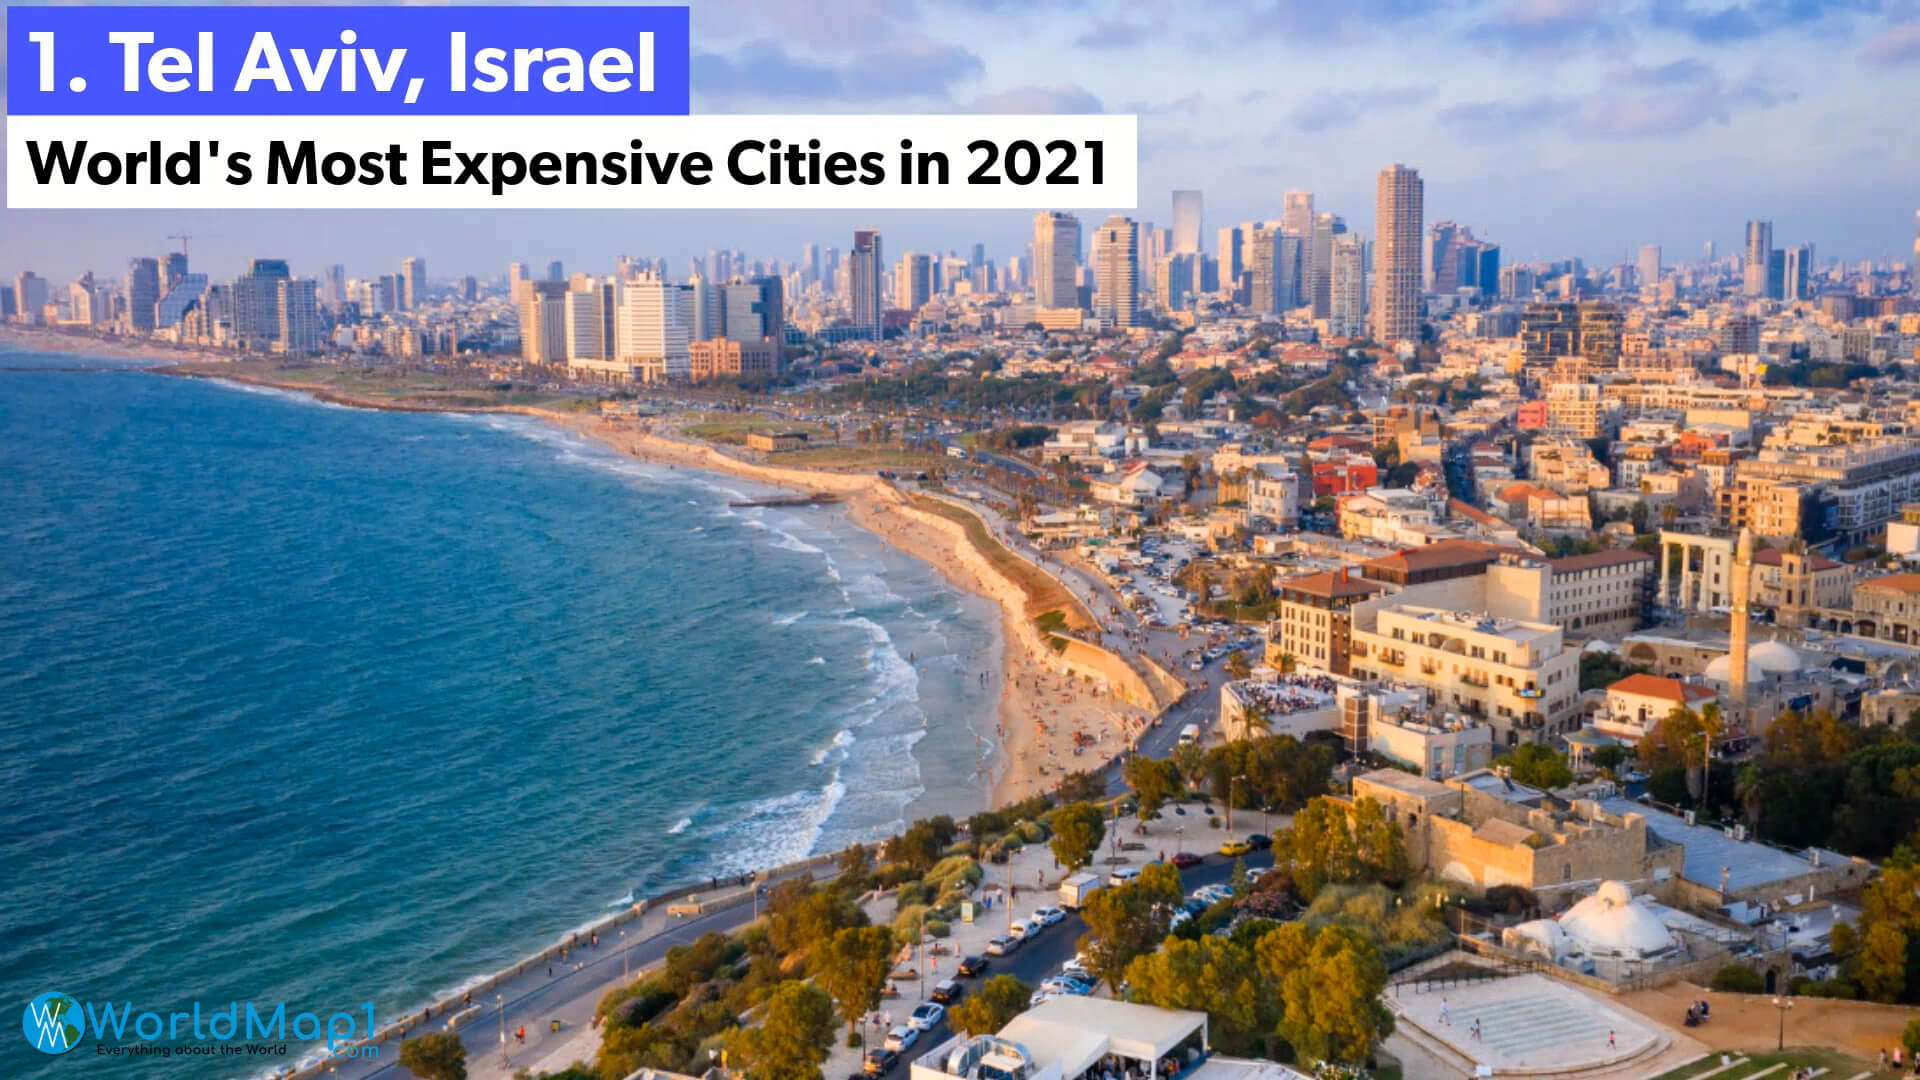 Dünya'nın En Pahalı Şehirleri - Tel Aviv, İsrail